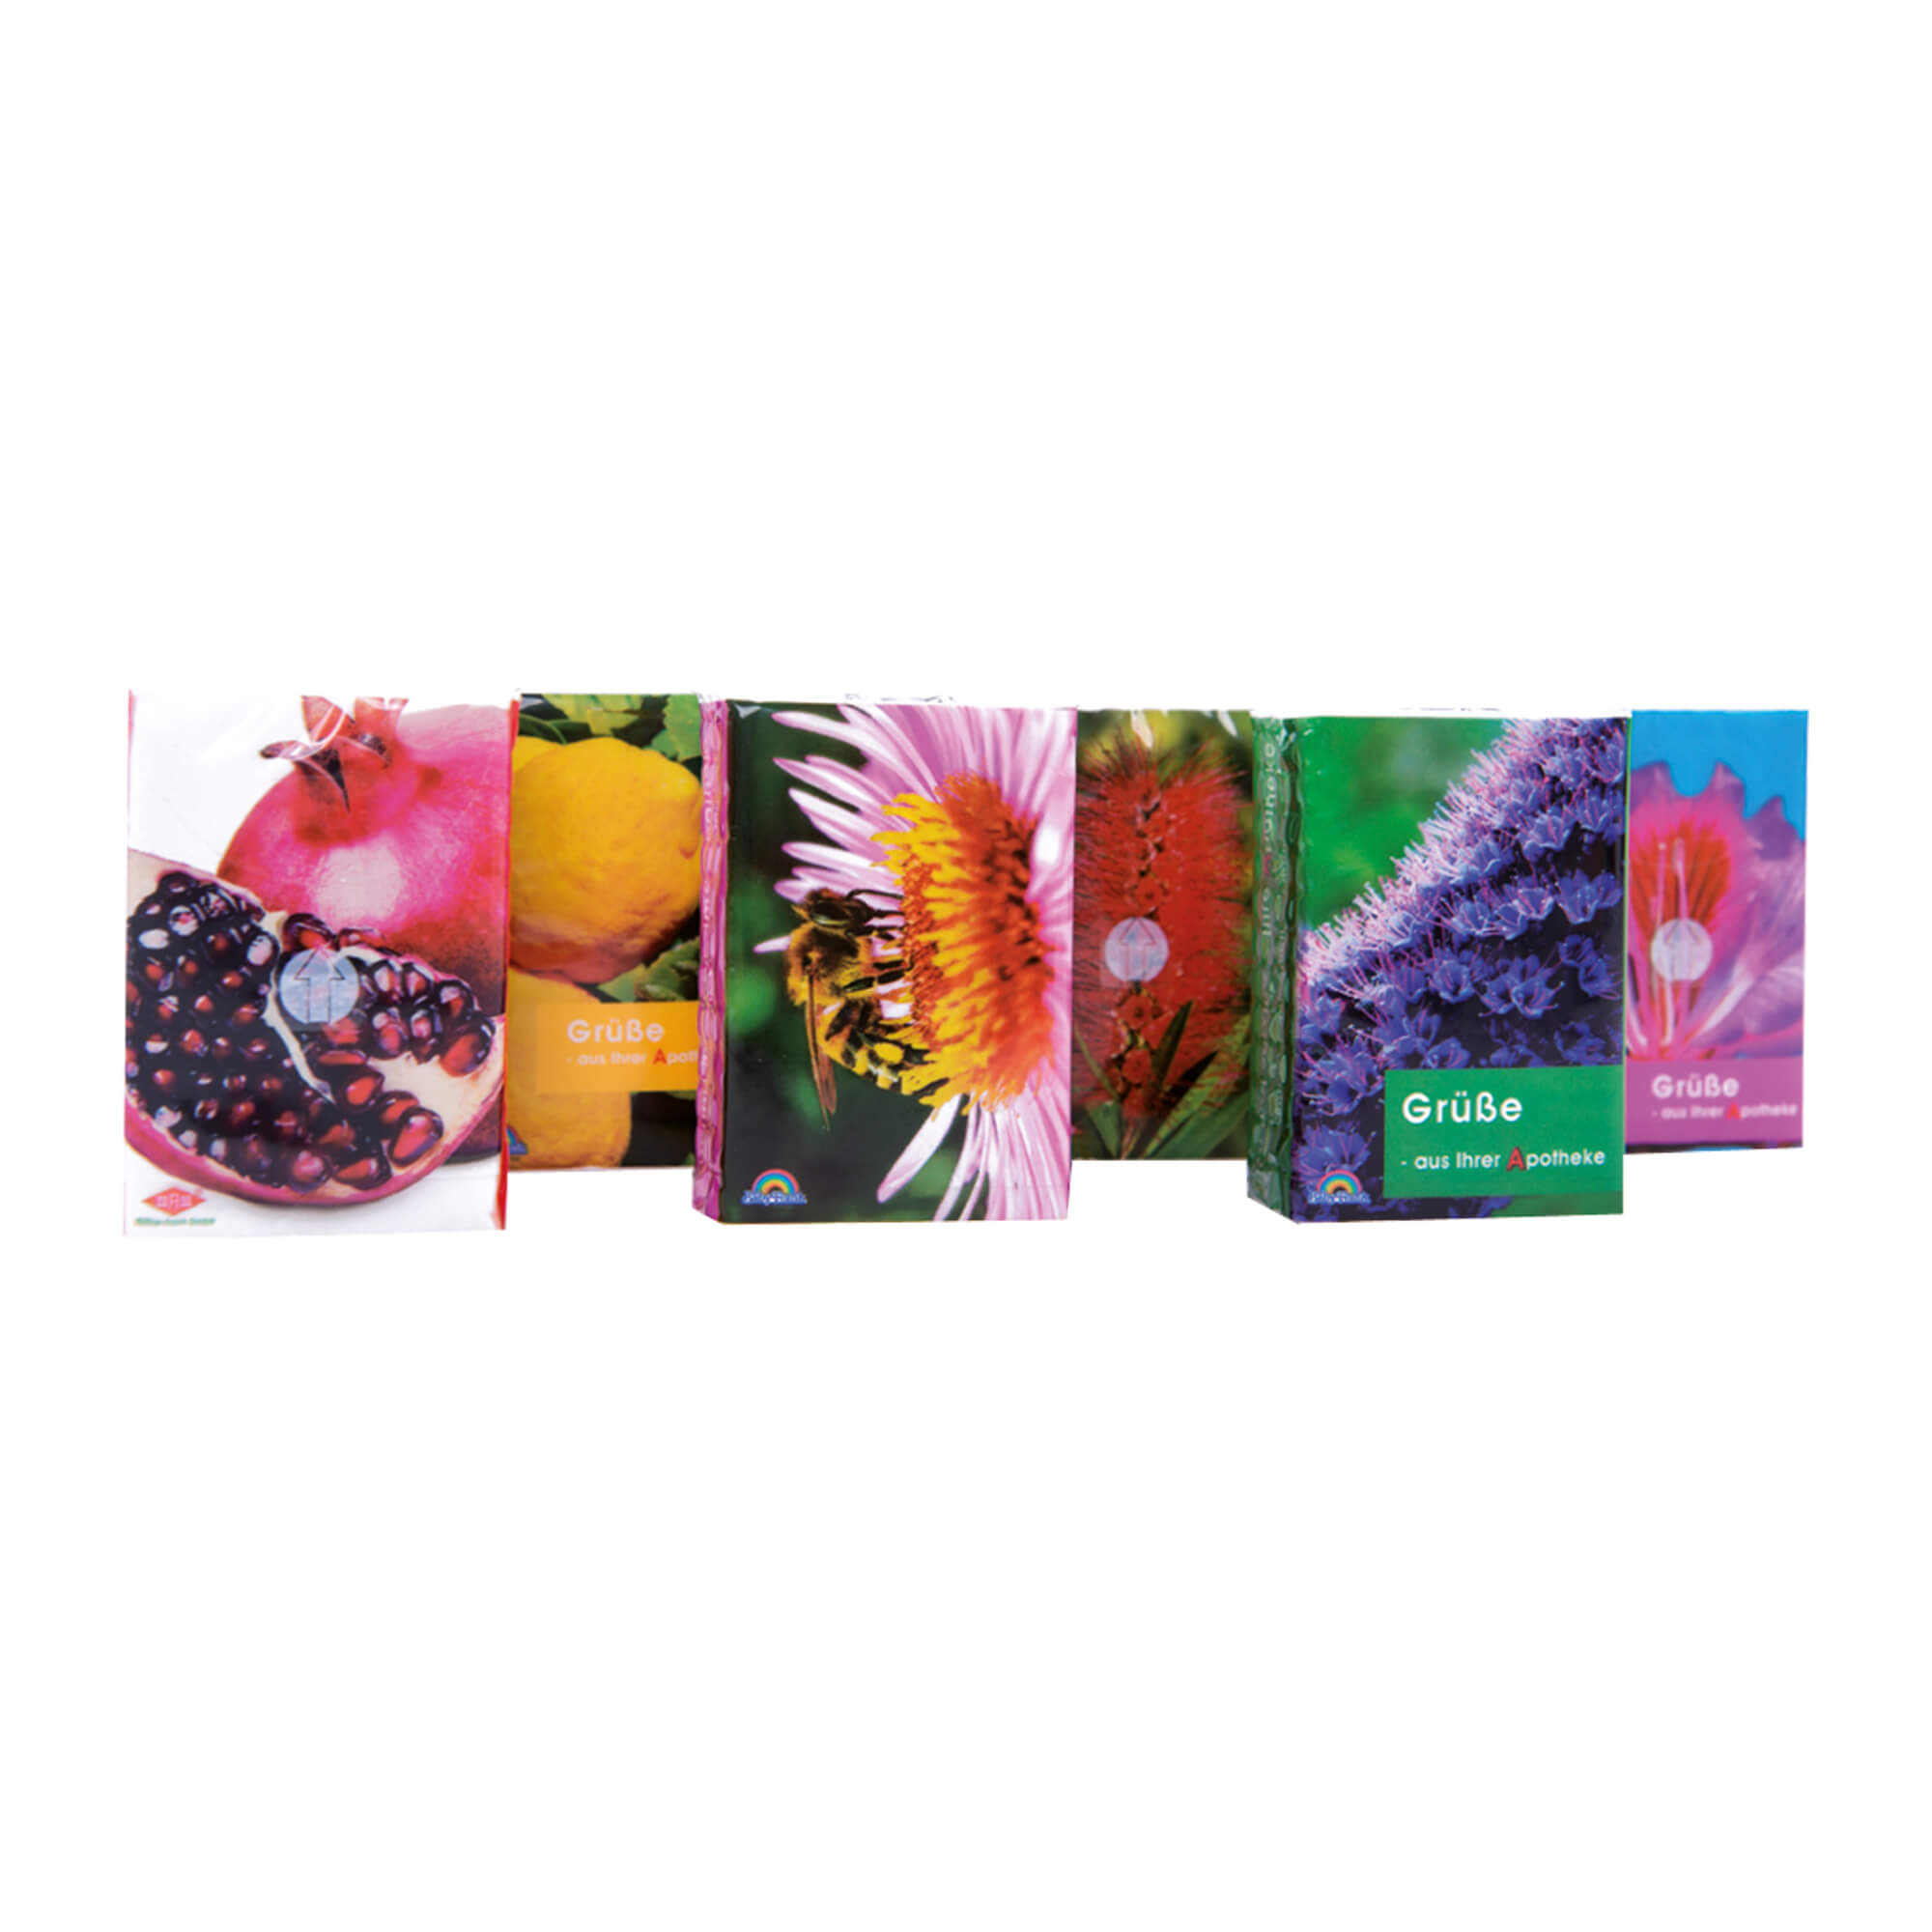 336 x 7 Taschentücher im Pocket-Format. Mit Flora-Motiv.